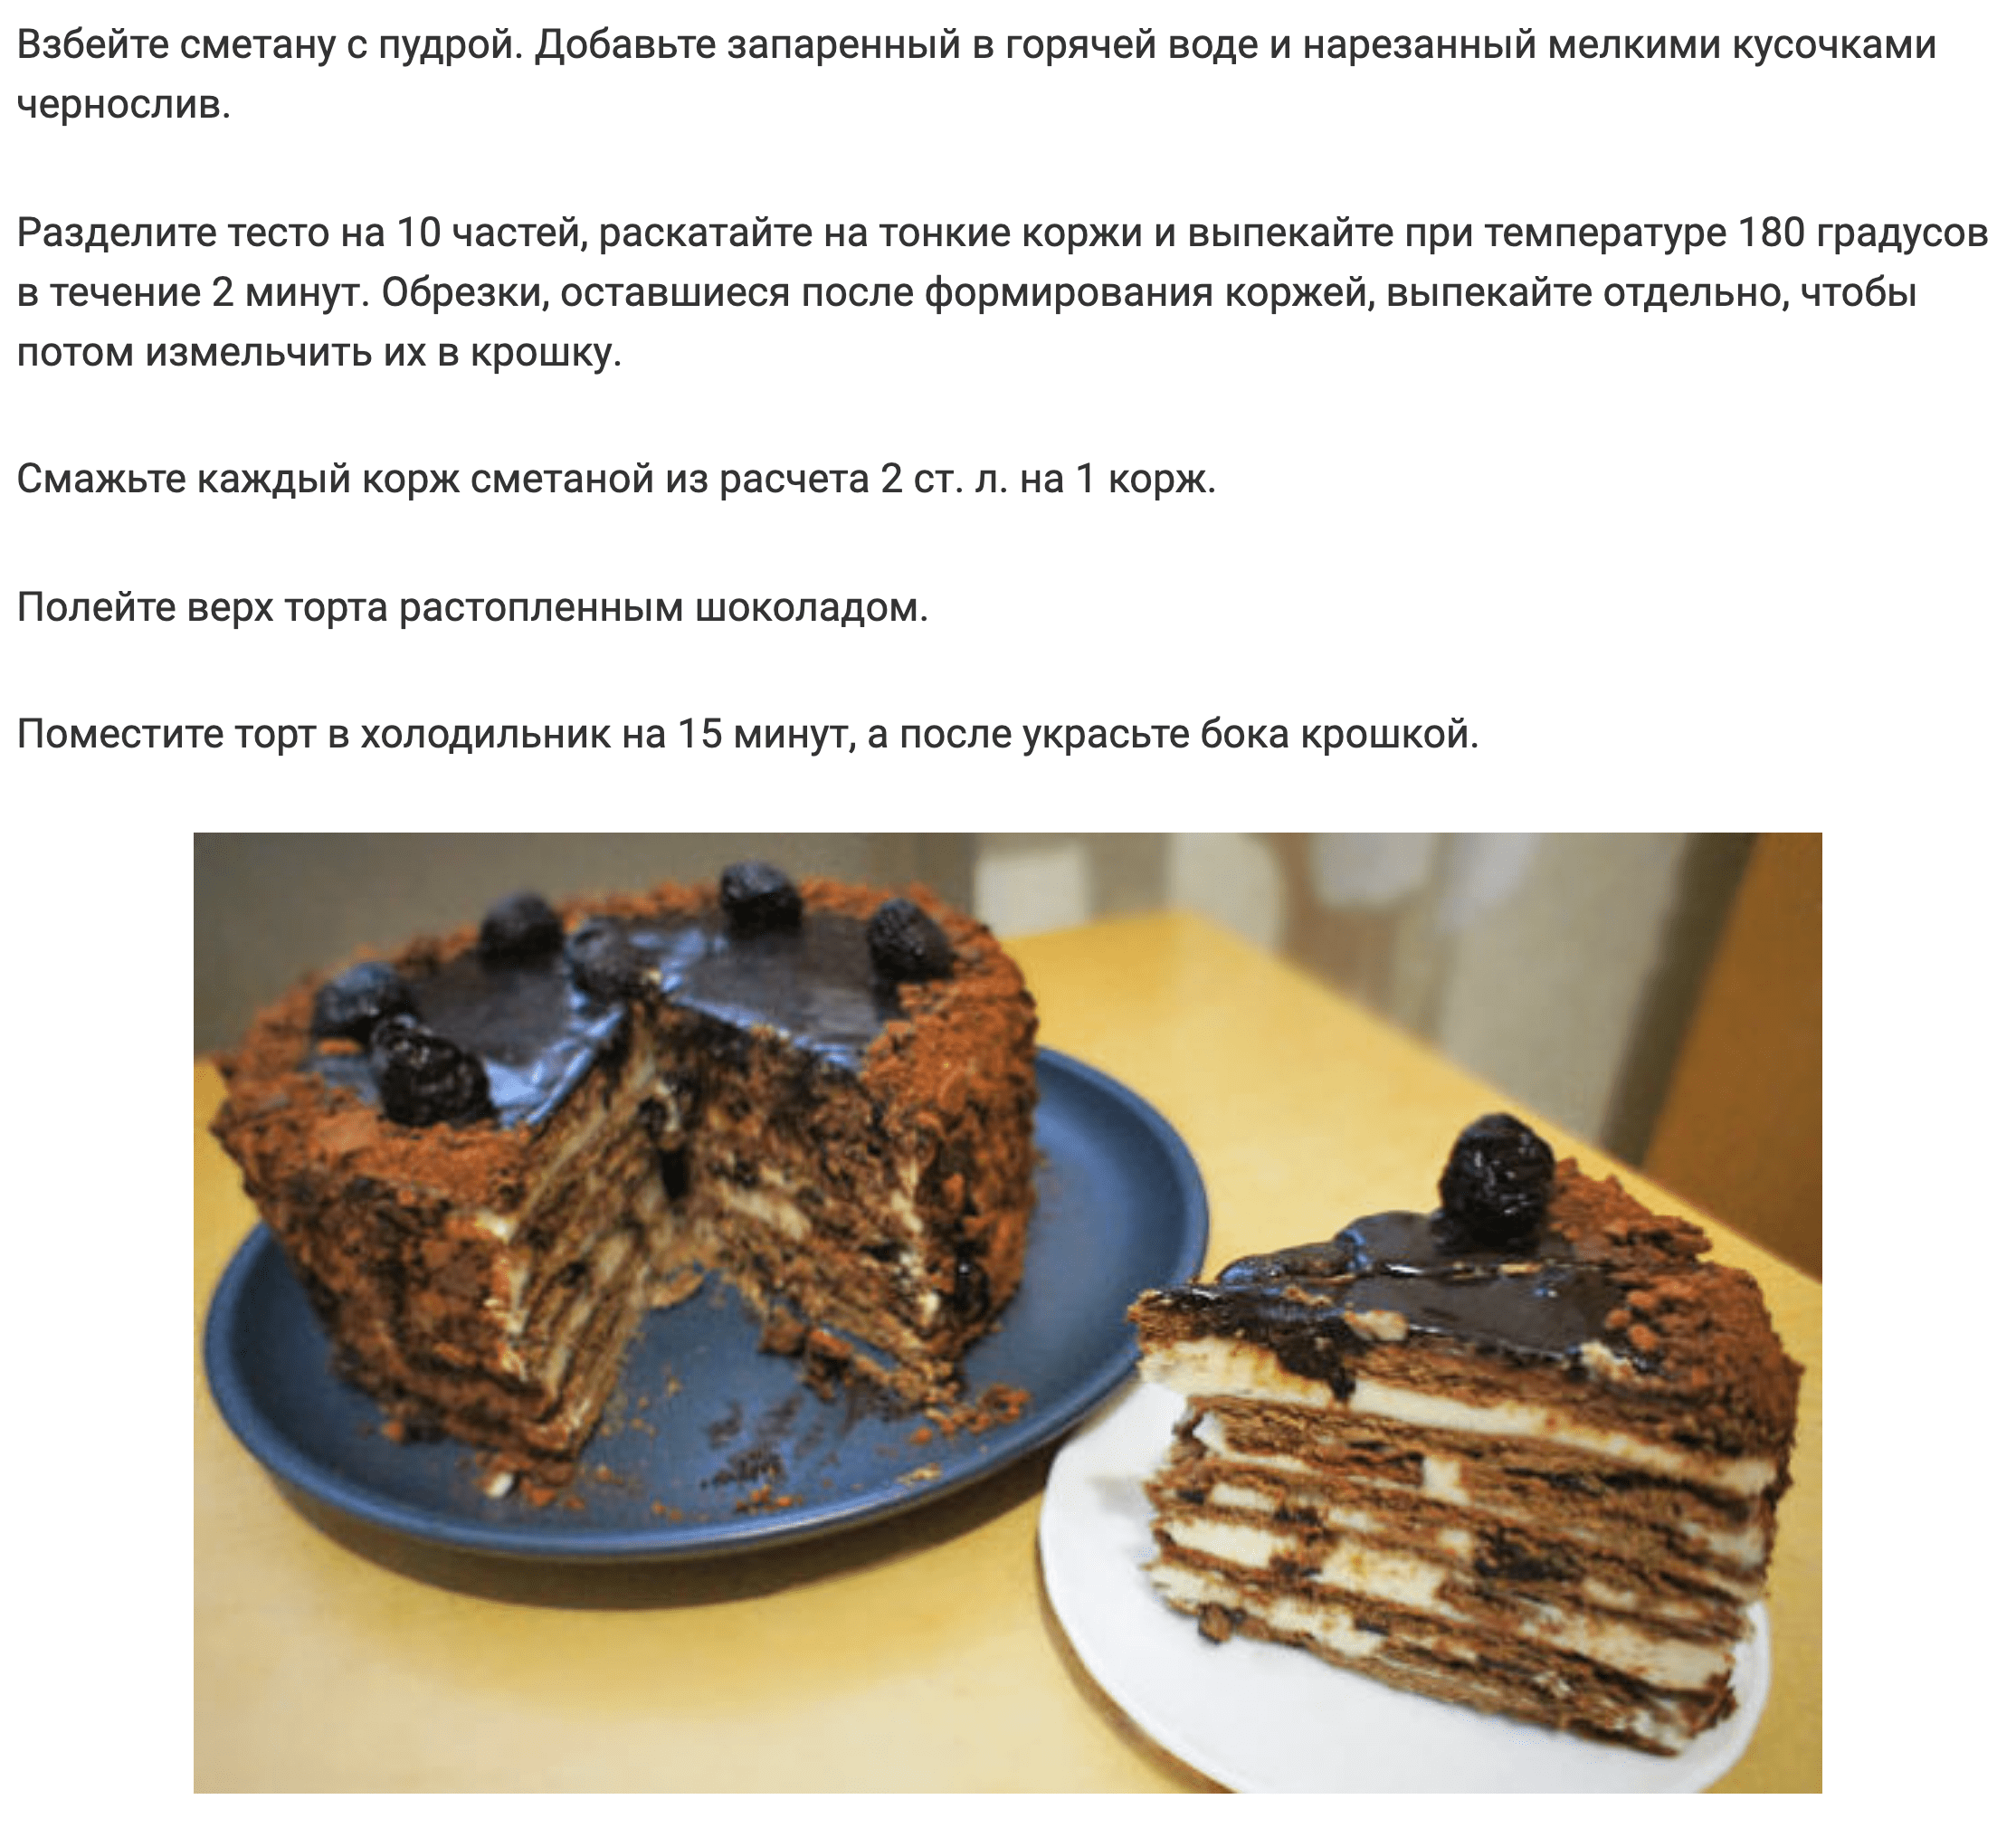 ТОП-3 самых лучших рецепта медовика с чернослива – этот торт просто тает во рту